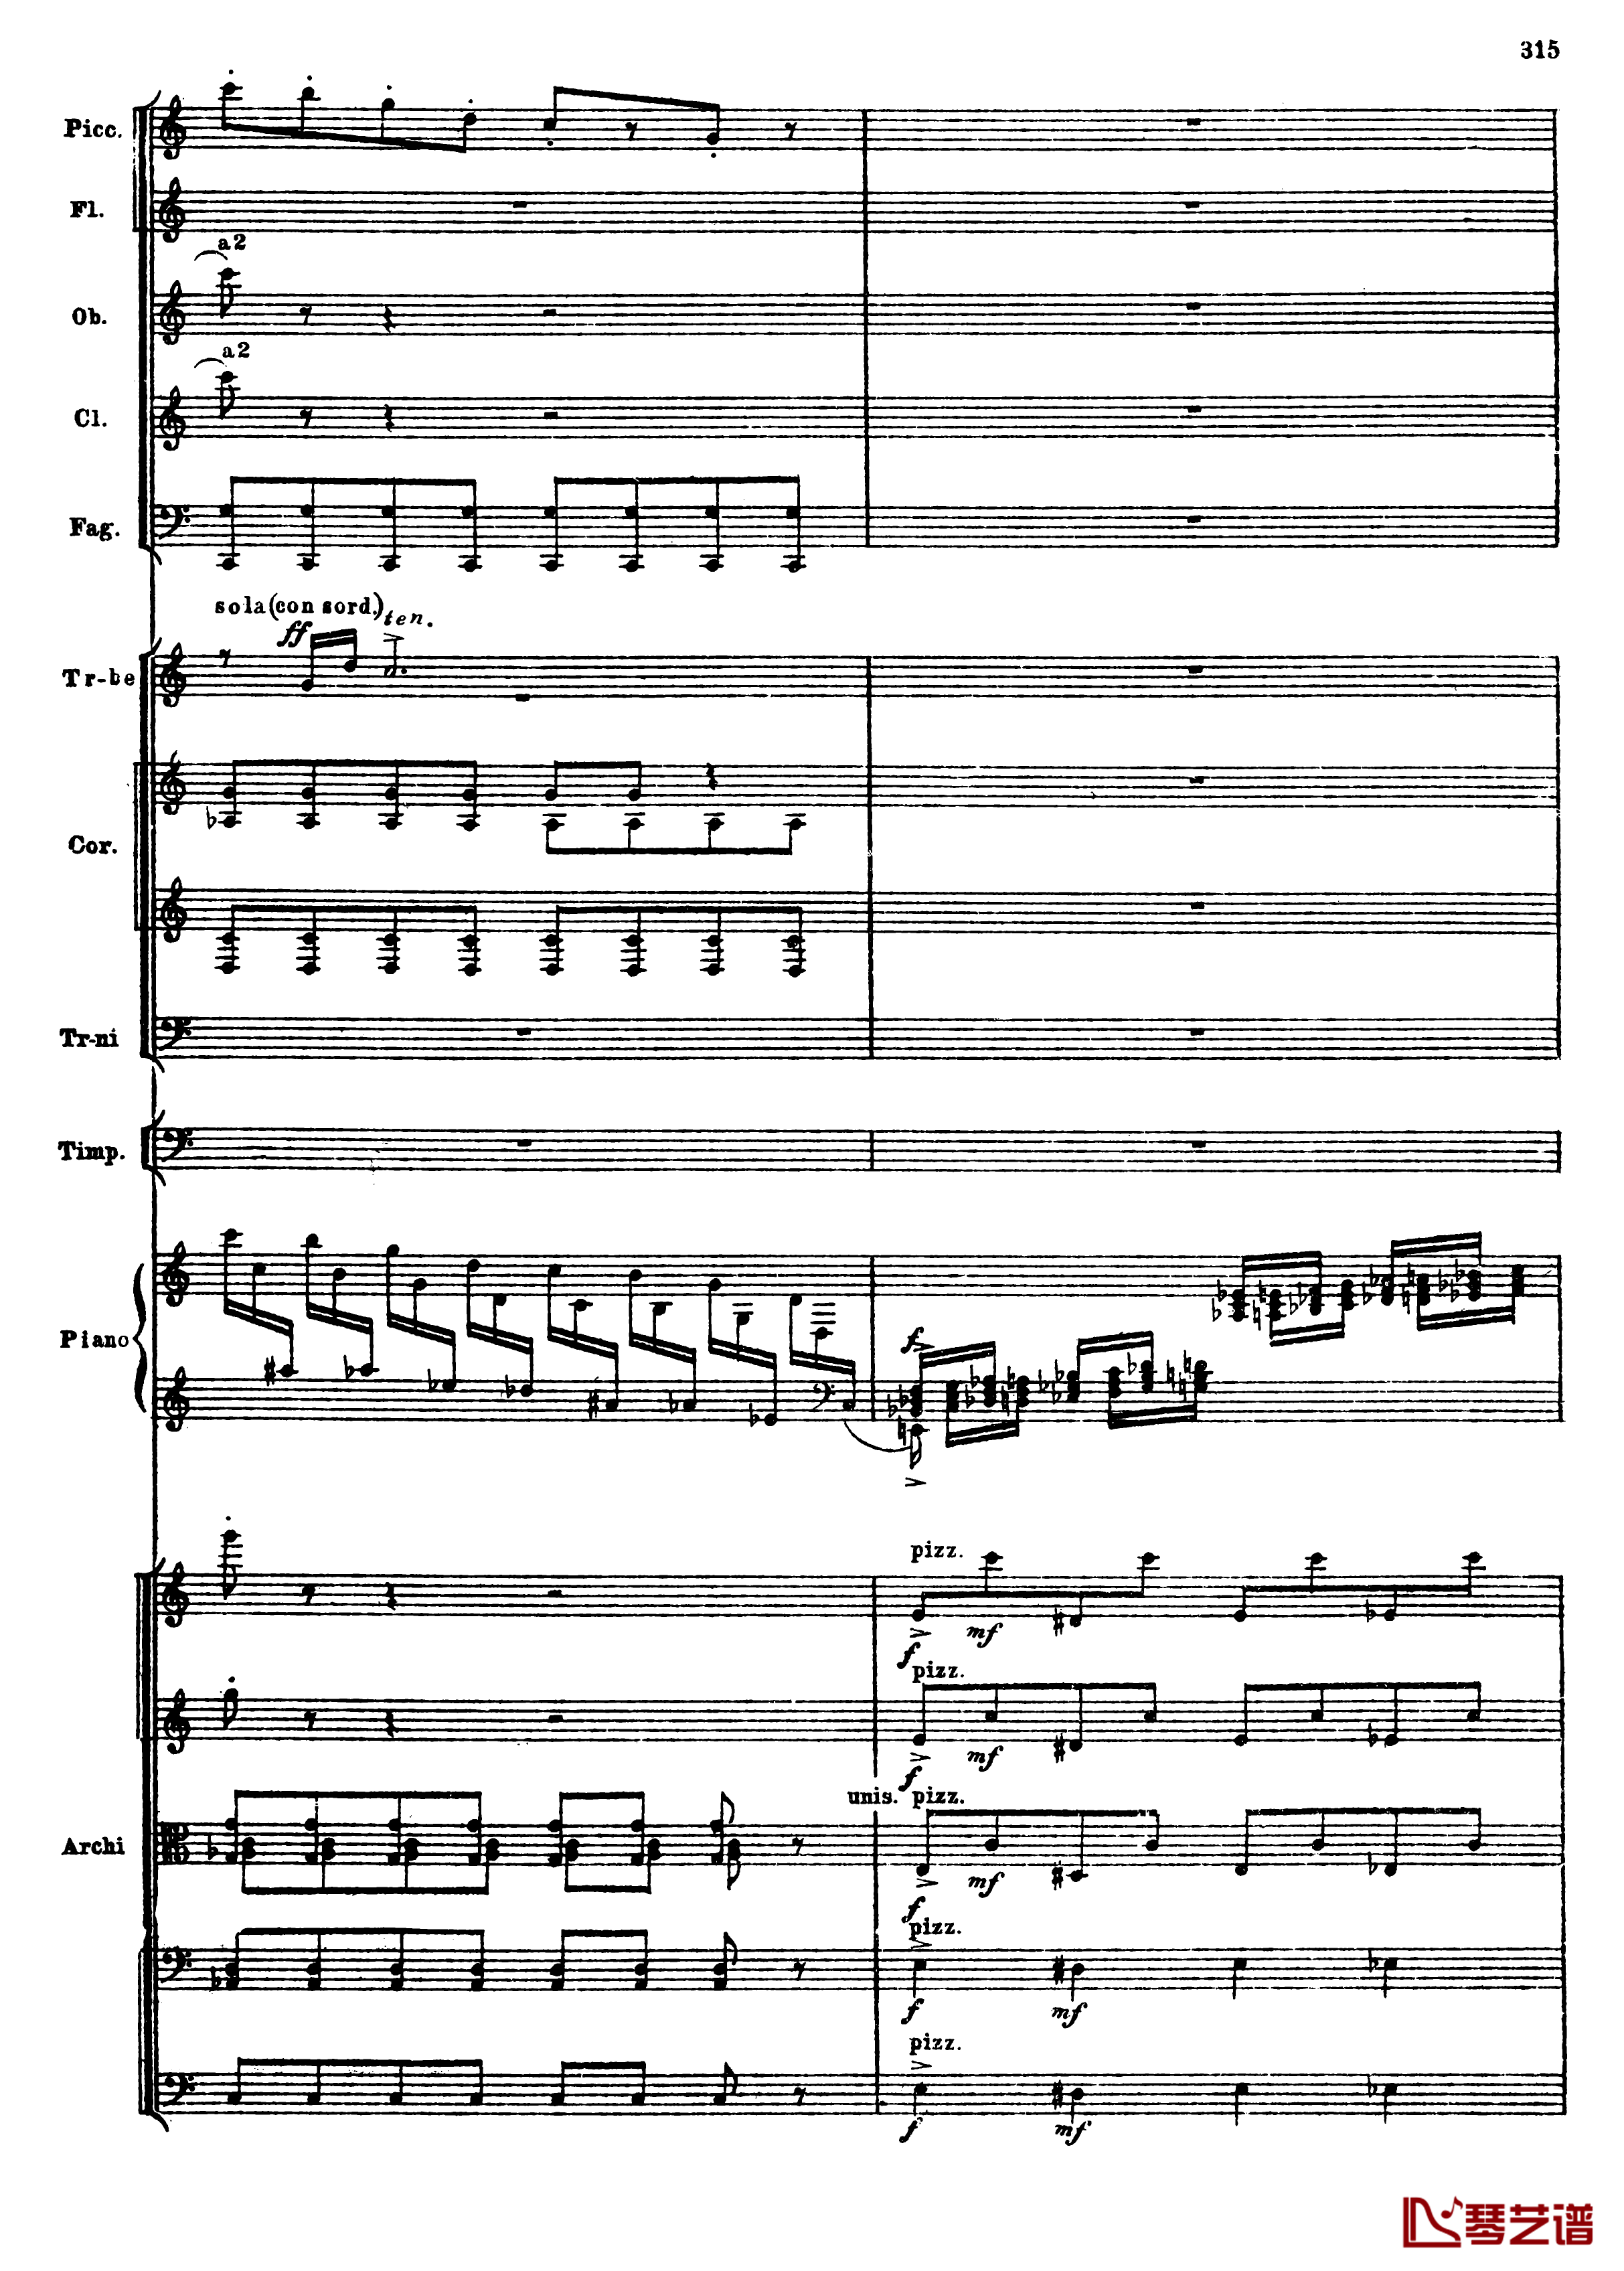 普罗科菲耶夫第三钢琴协奏曲钢琴谱-总谱-普罗科非耶夫47